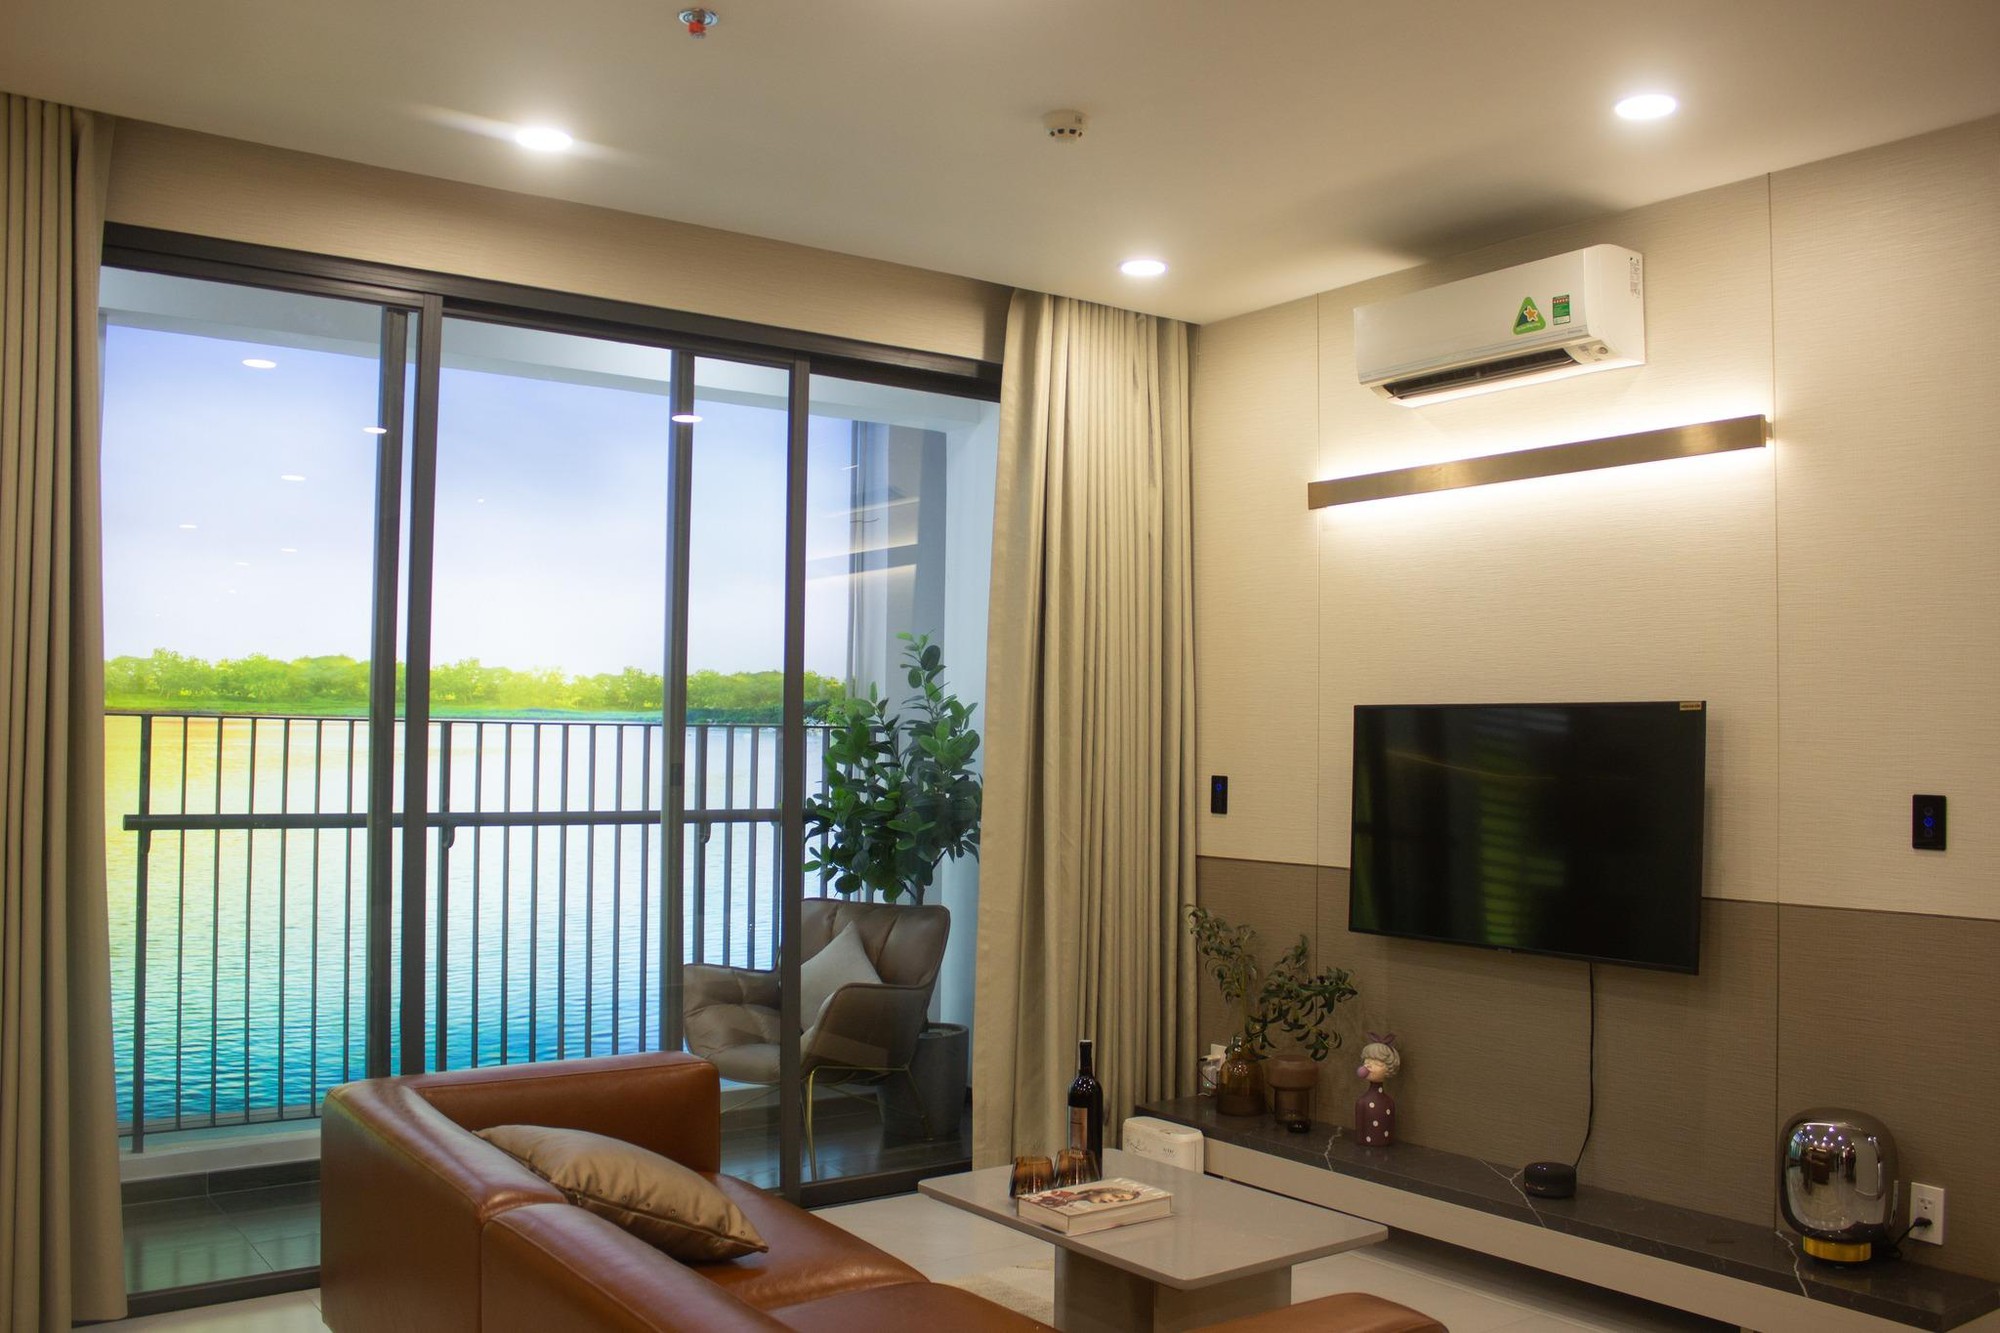 FPT Smart Home bao phủ toàn bộ căn hộ The Hybrid Thủ Đức - Ảnh 2